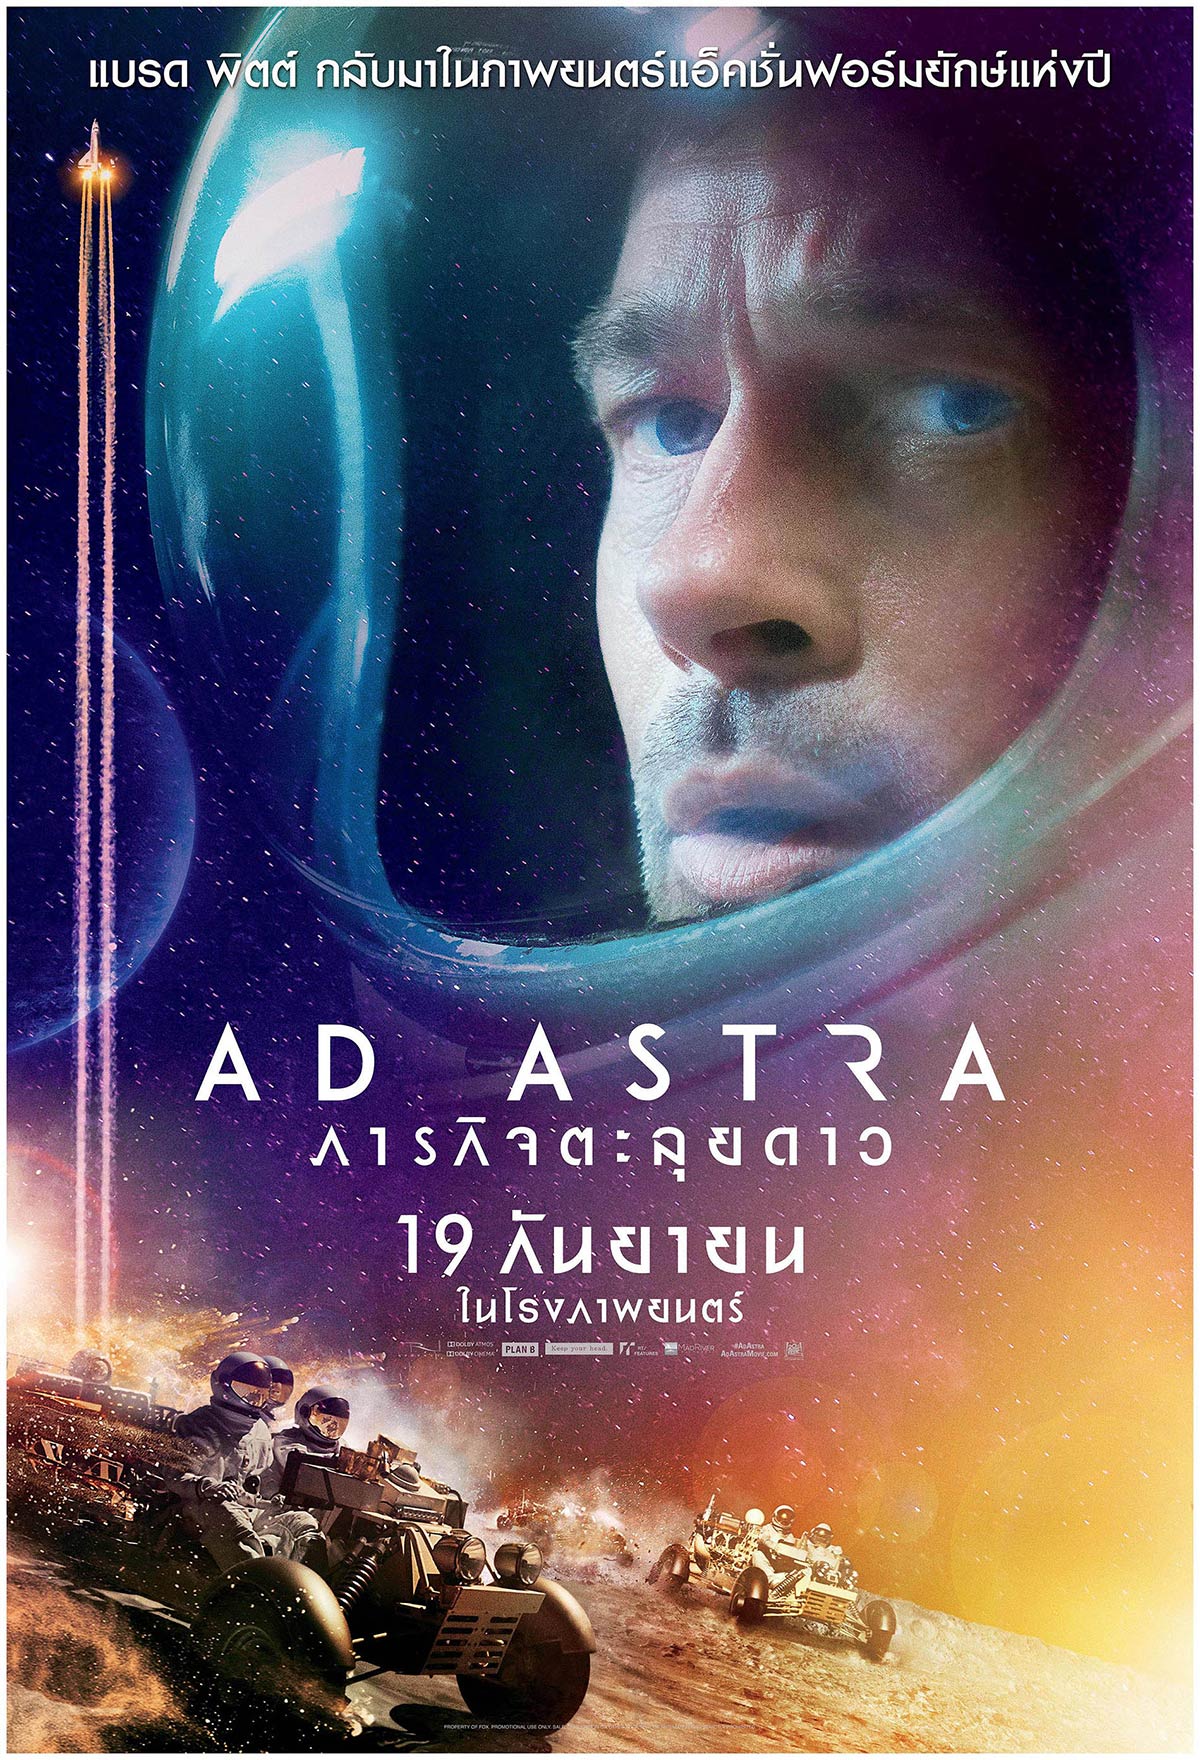 ดูหนังออนไลน์ AD ASTRA (2019) ภารกิจตะลุยดาว